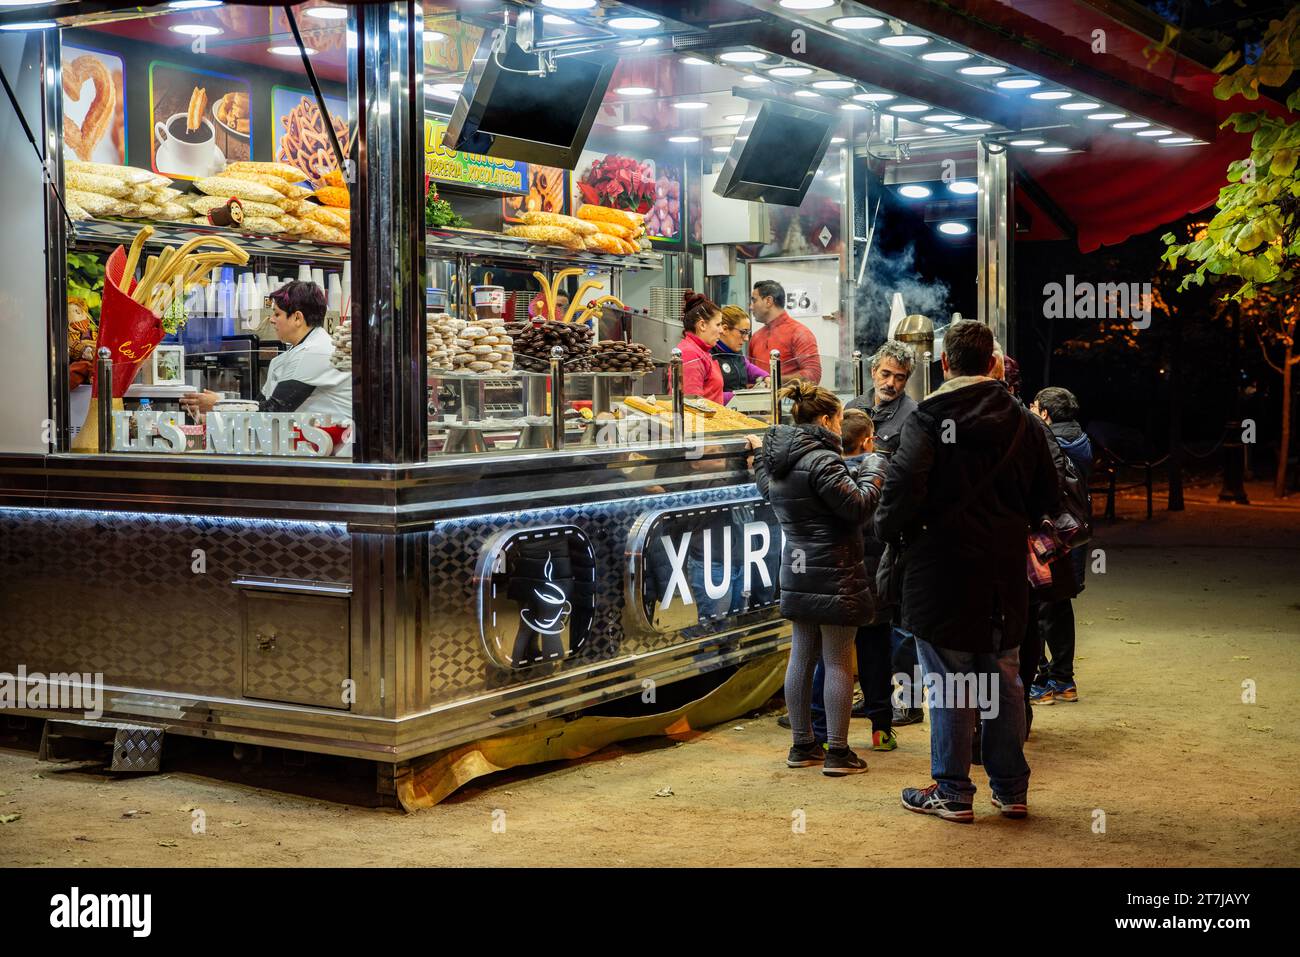 Erleben Sie die Essenz von Barcelonas Straßenleben: Ein traditioneller Churro-Stand strahlt Wärme, verführerische Aromen und lebhafte Treffen aus, während die Menschen sich verwöhnen Stockfoto